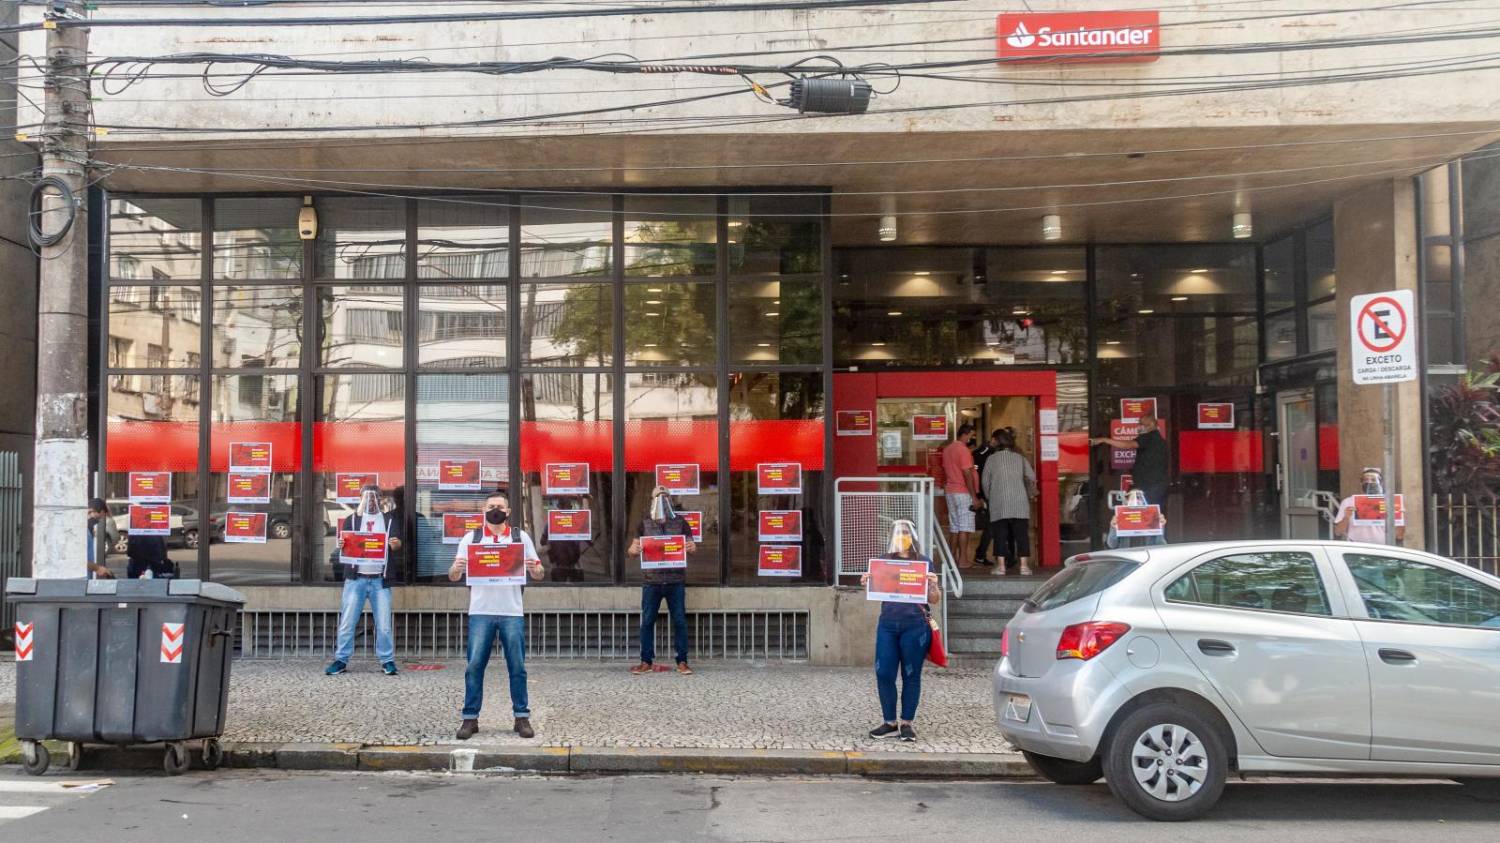 PPRS para todos é conquista da luta sindical, não “benefício” do Santander